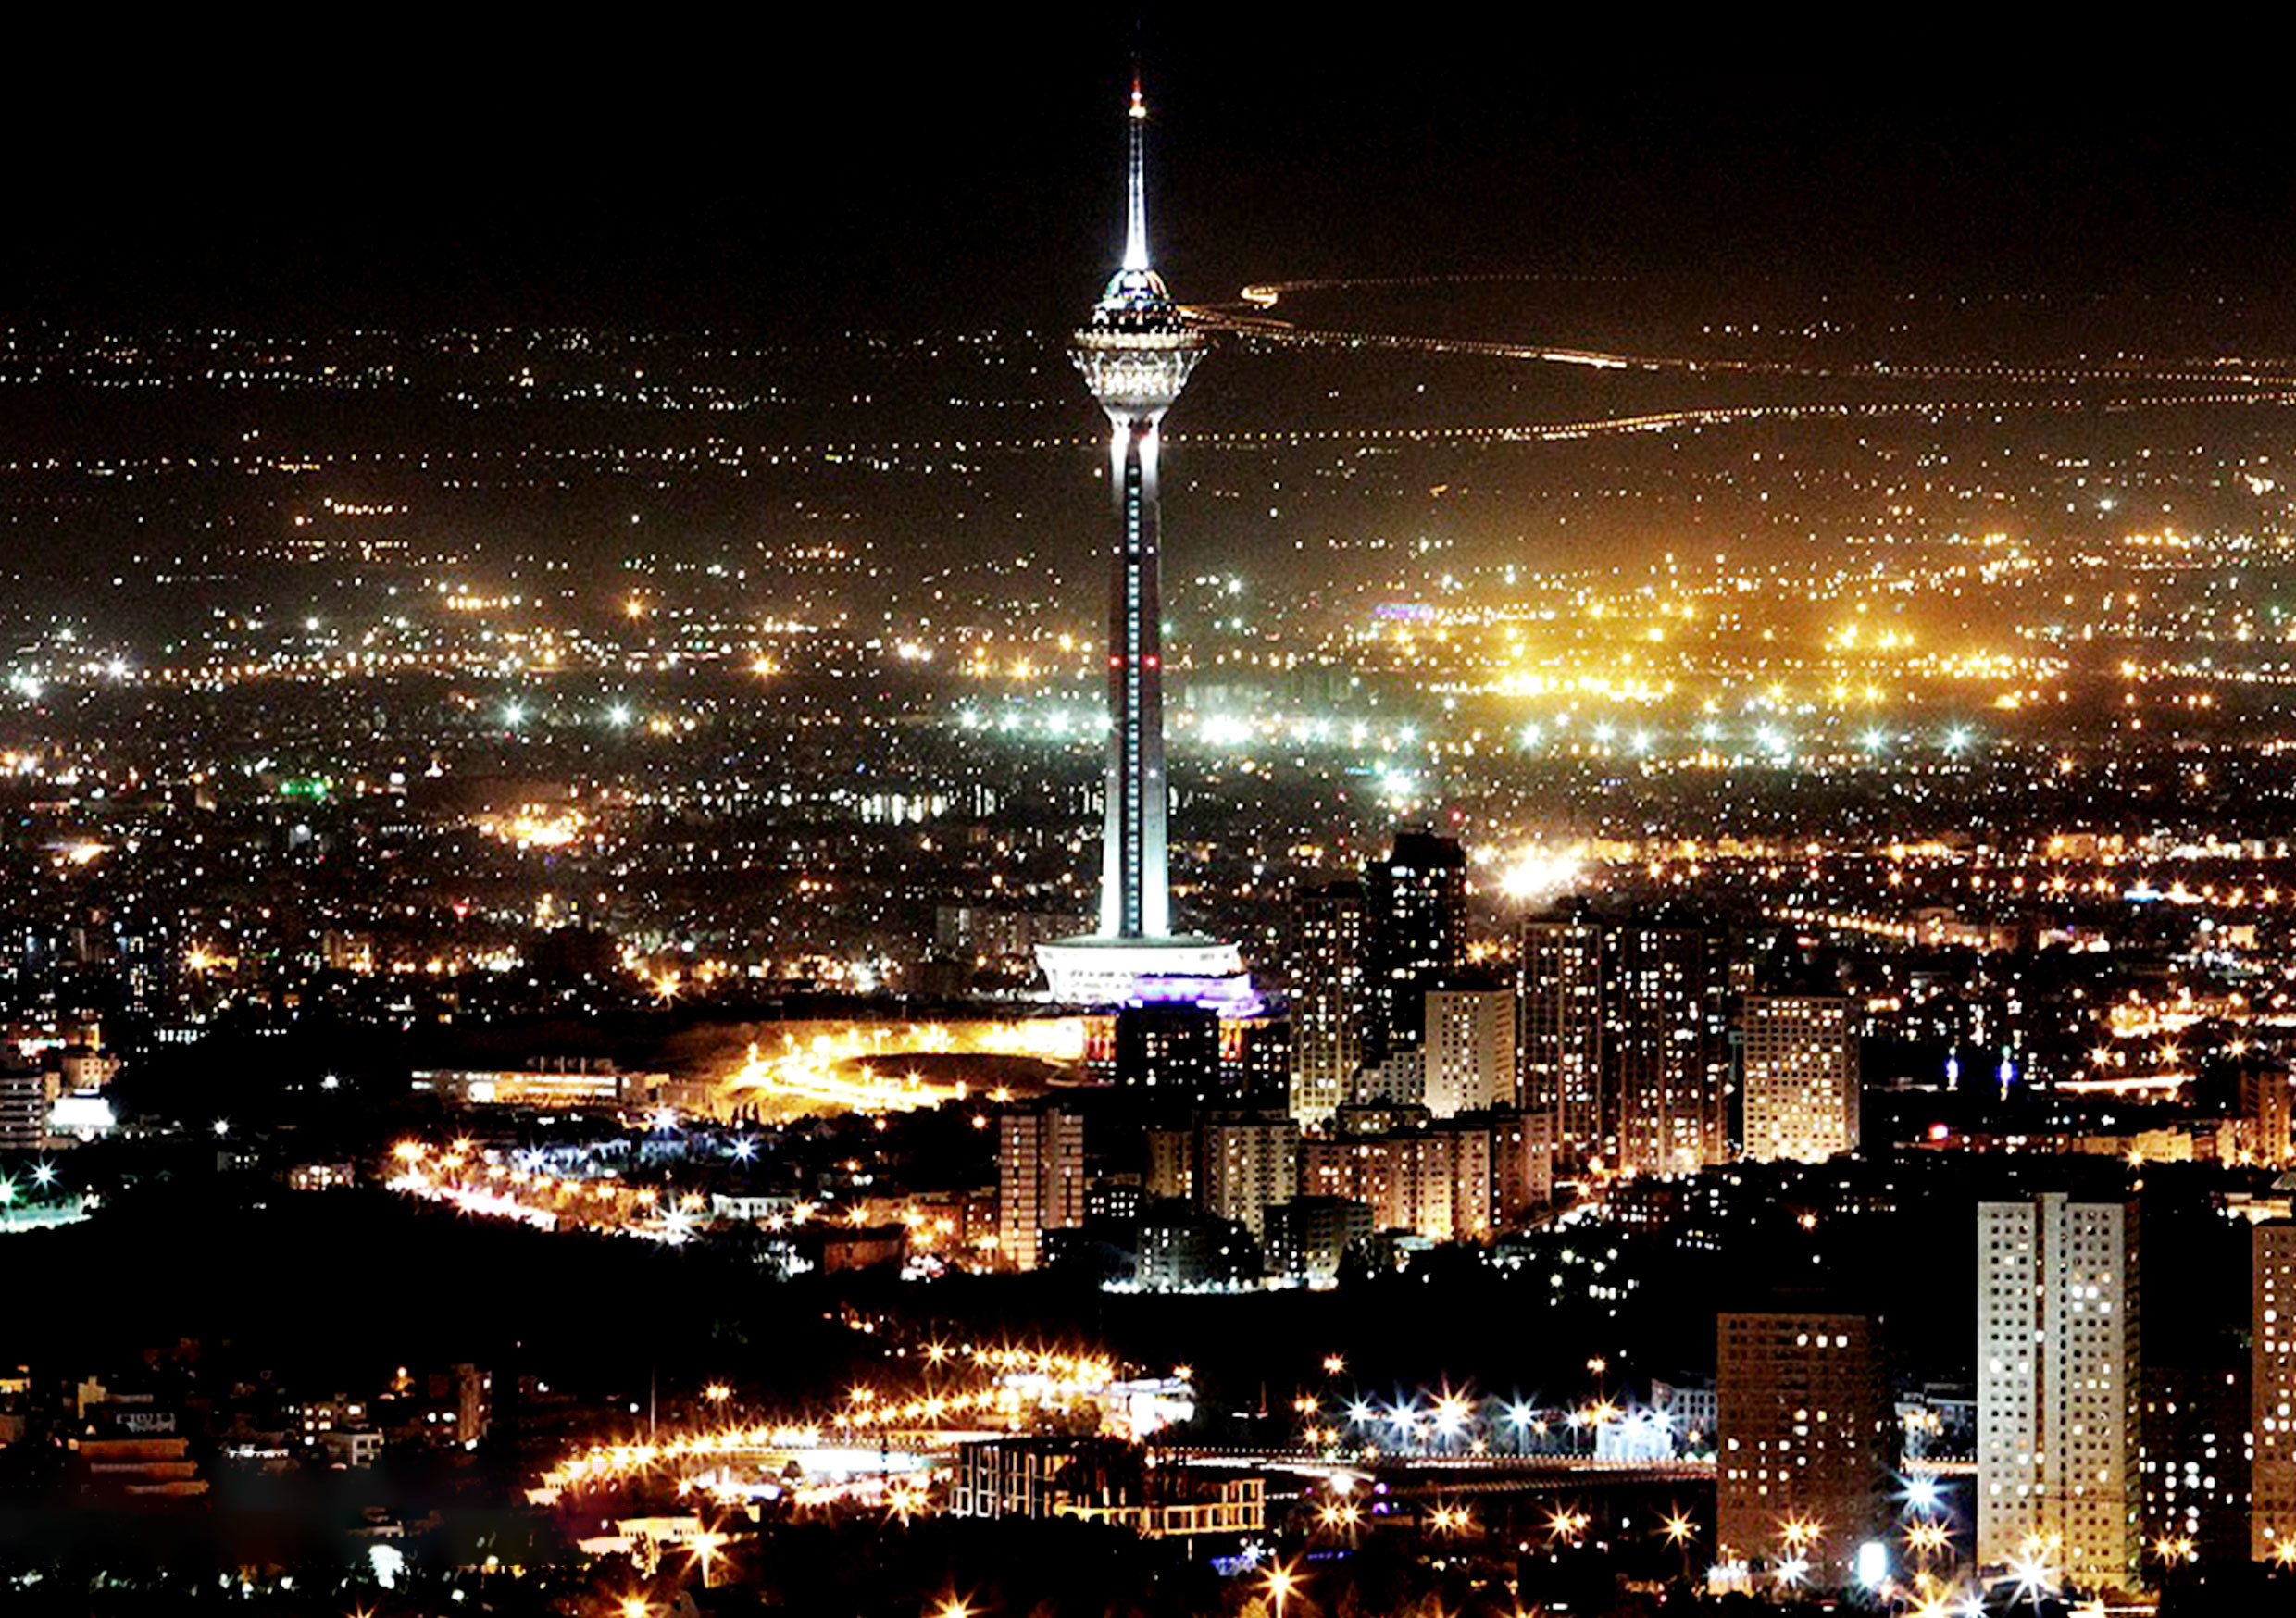 مکان های مناسب عکاسی در تهران 